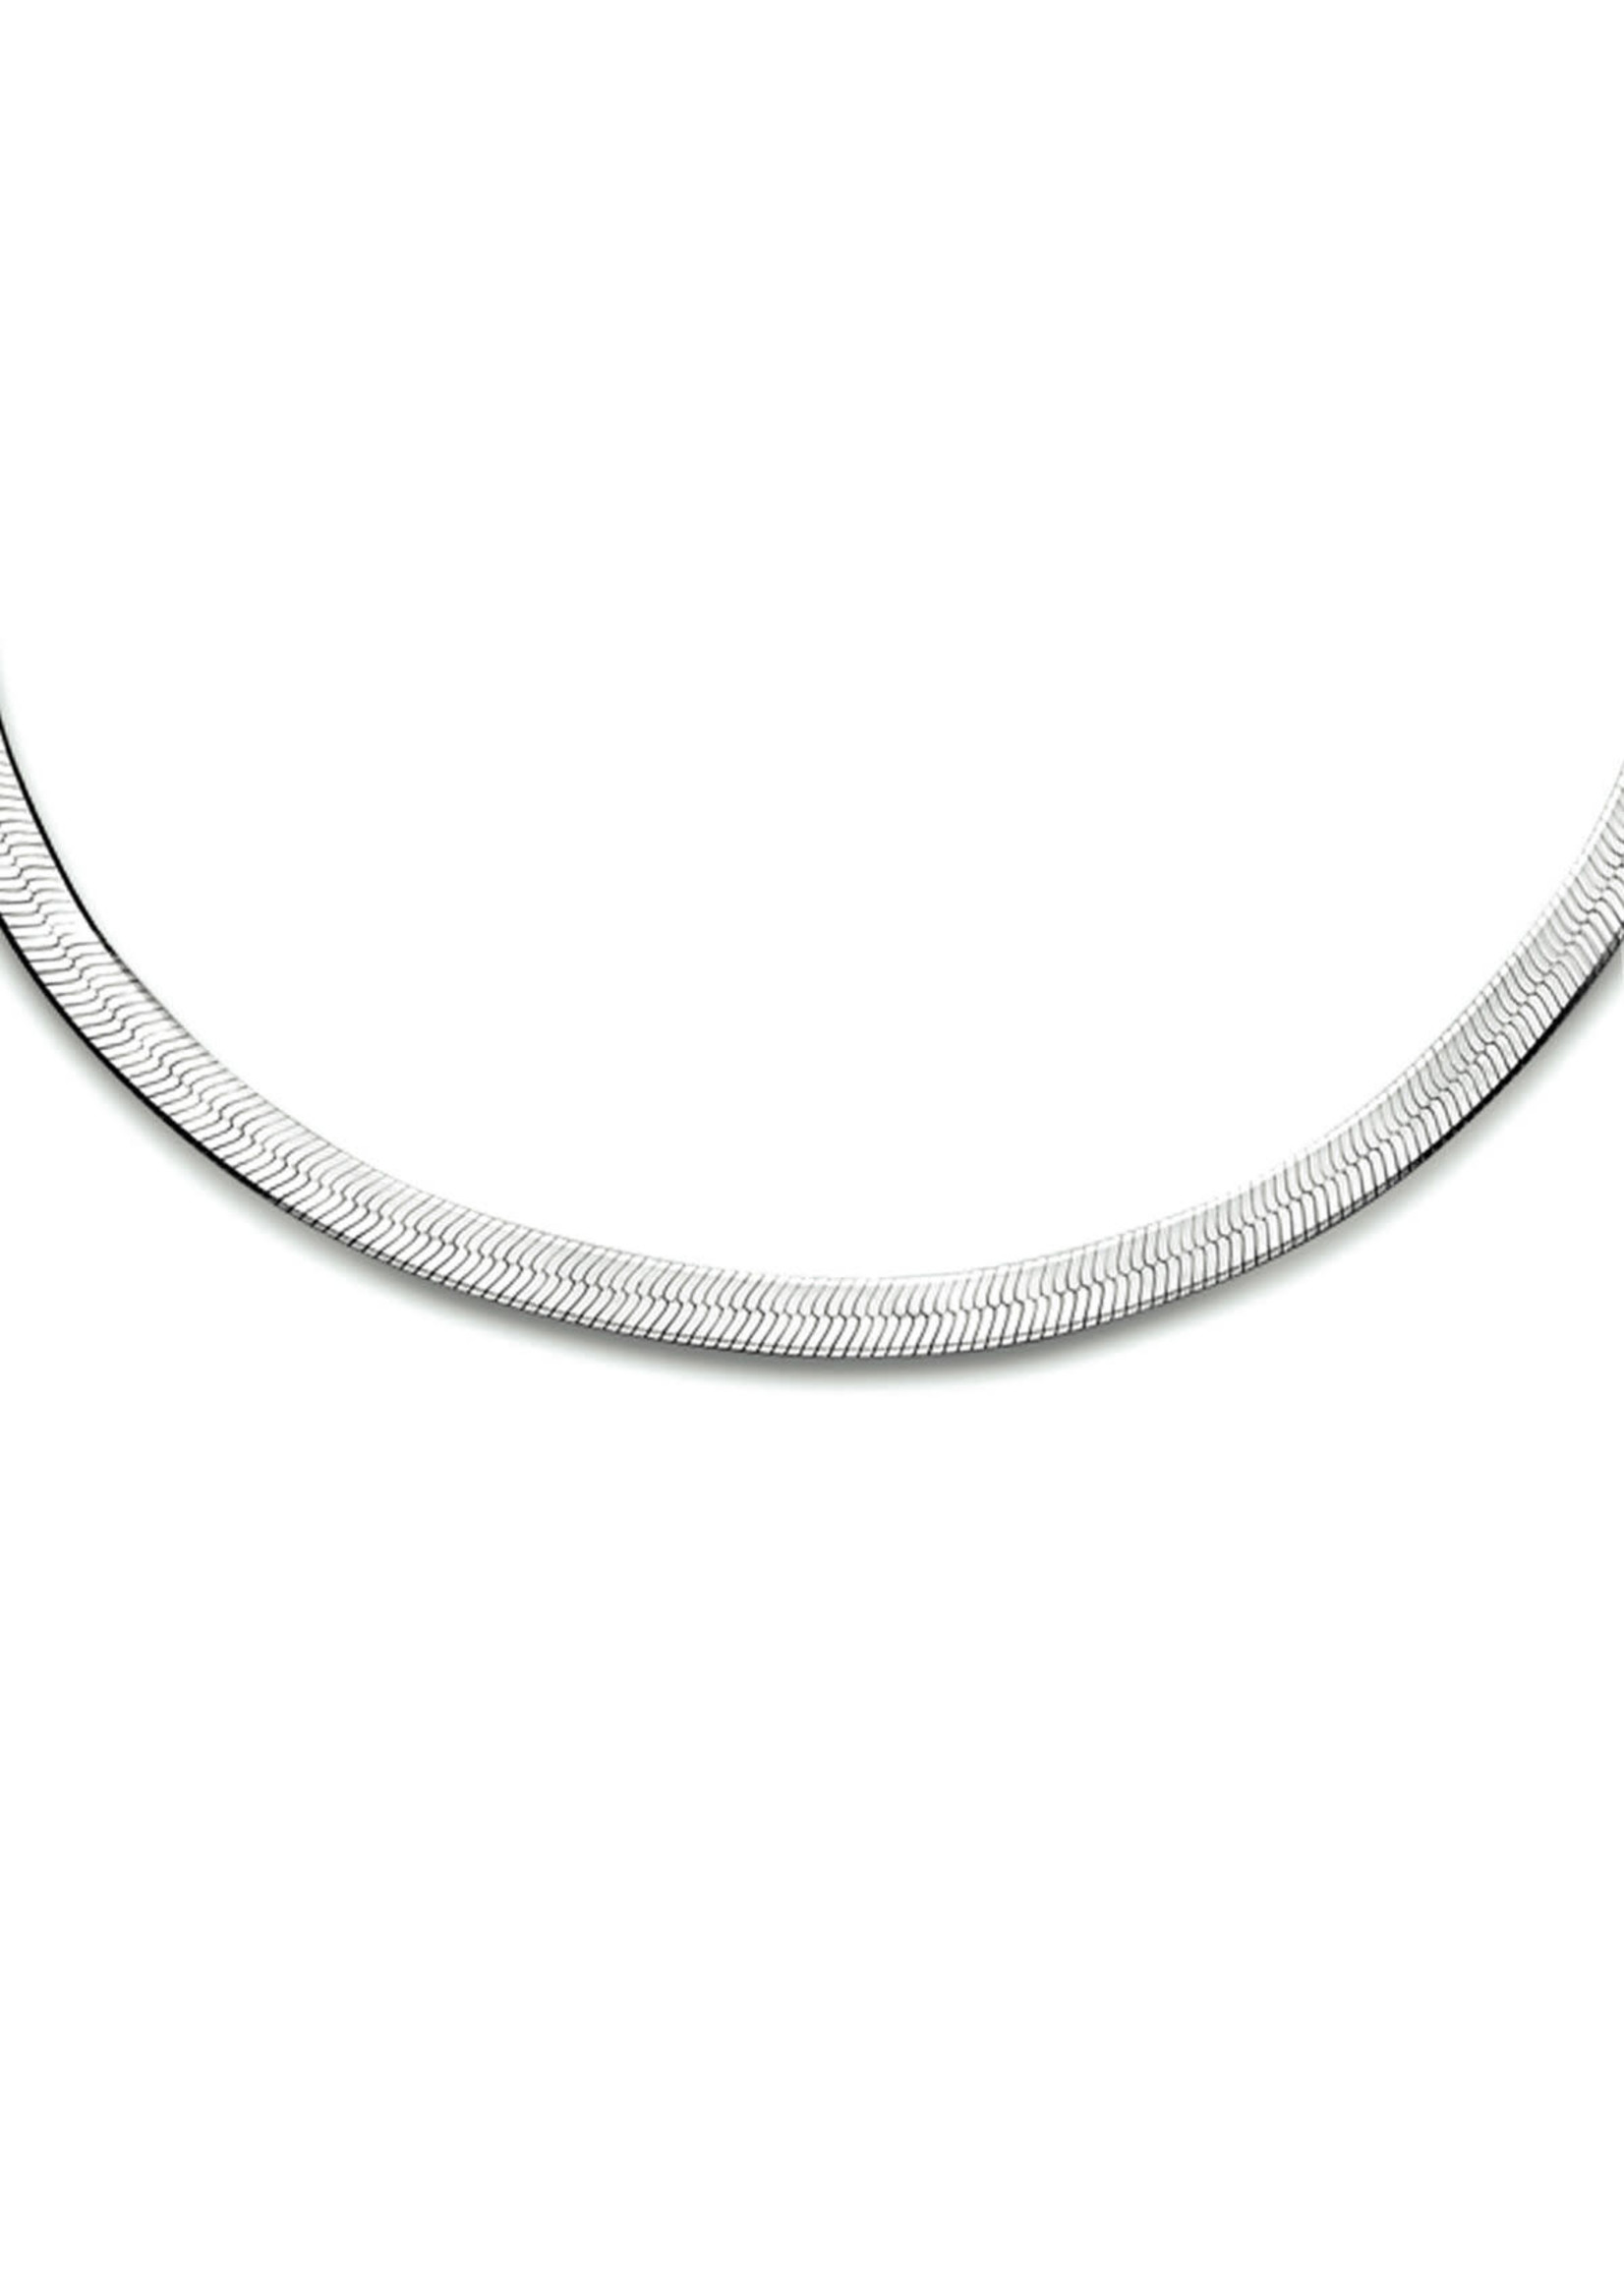 Cataleya jewels Zilveren collier slang plat 3,5 mm 42 cm